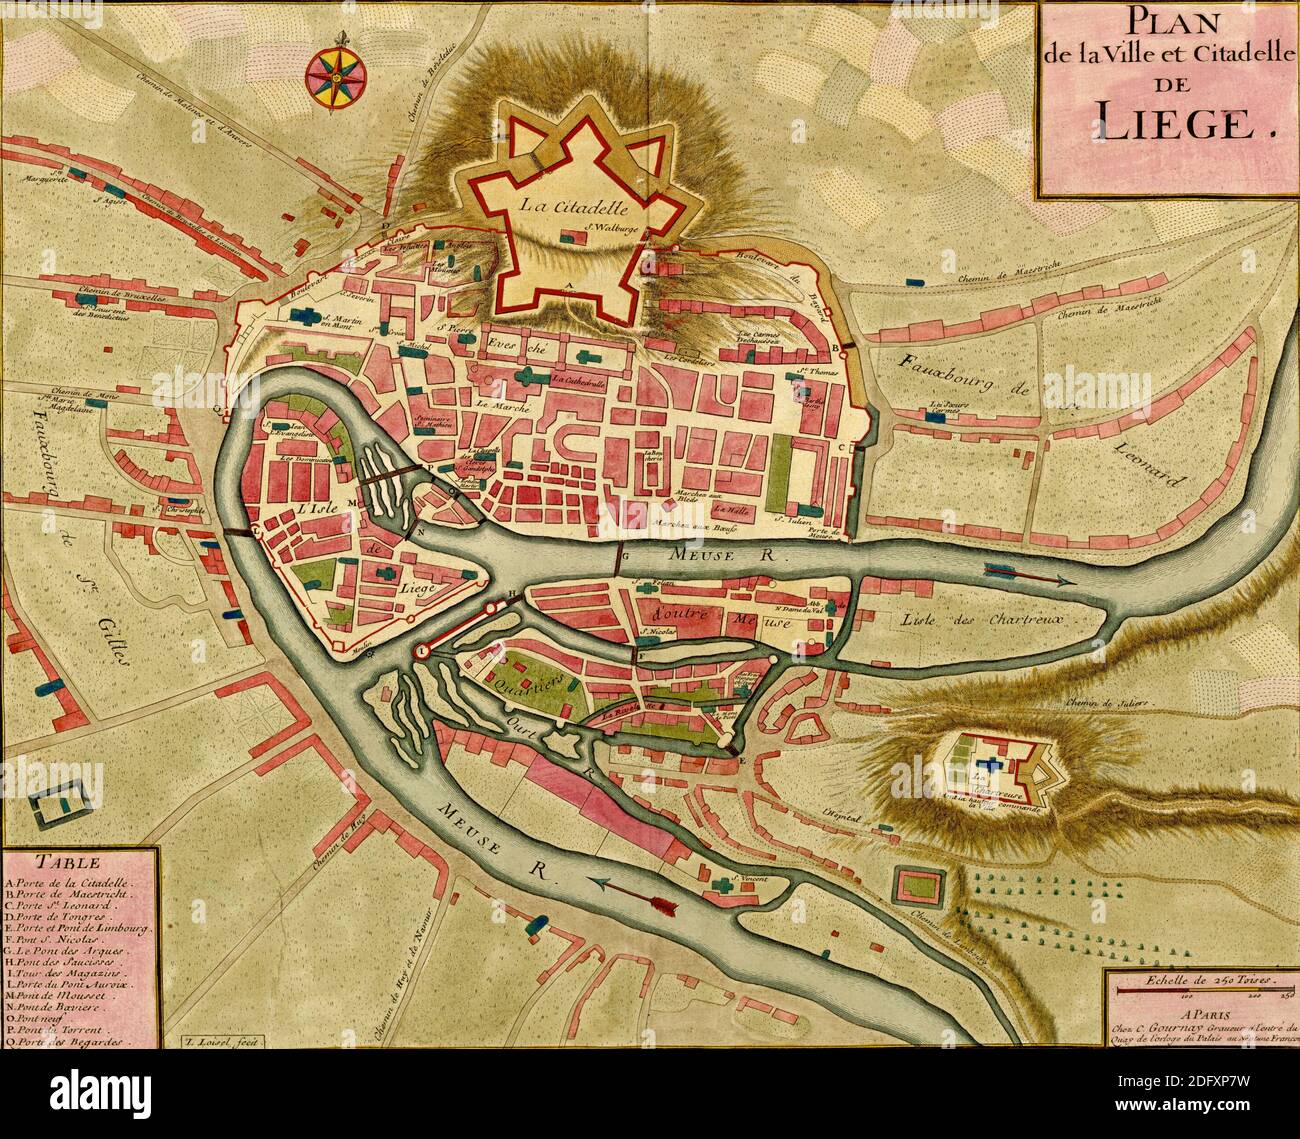 Carte antique de la ville et de la citadelle de Liège, Atlas des fortifications et des batailles, par Anna Beek et Gaspar Baillieu, initialement publié au XVIIe siècle. Banque D'Images